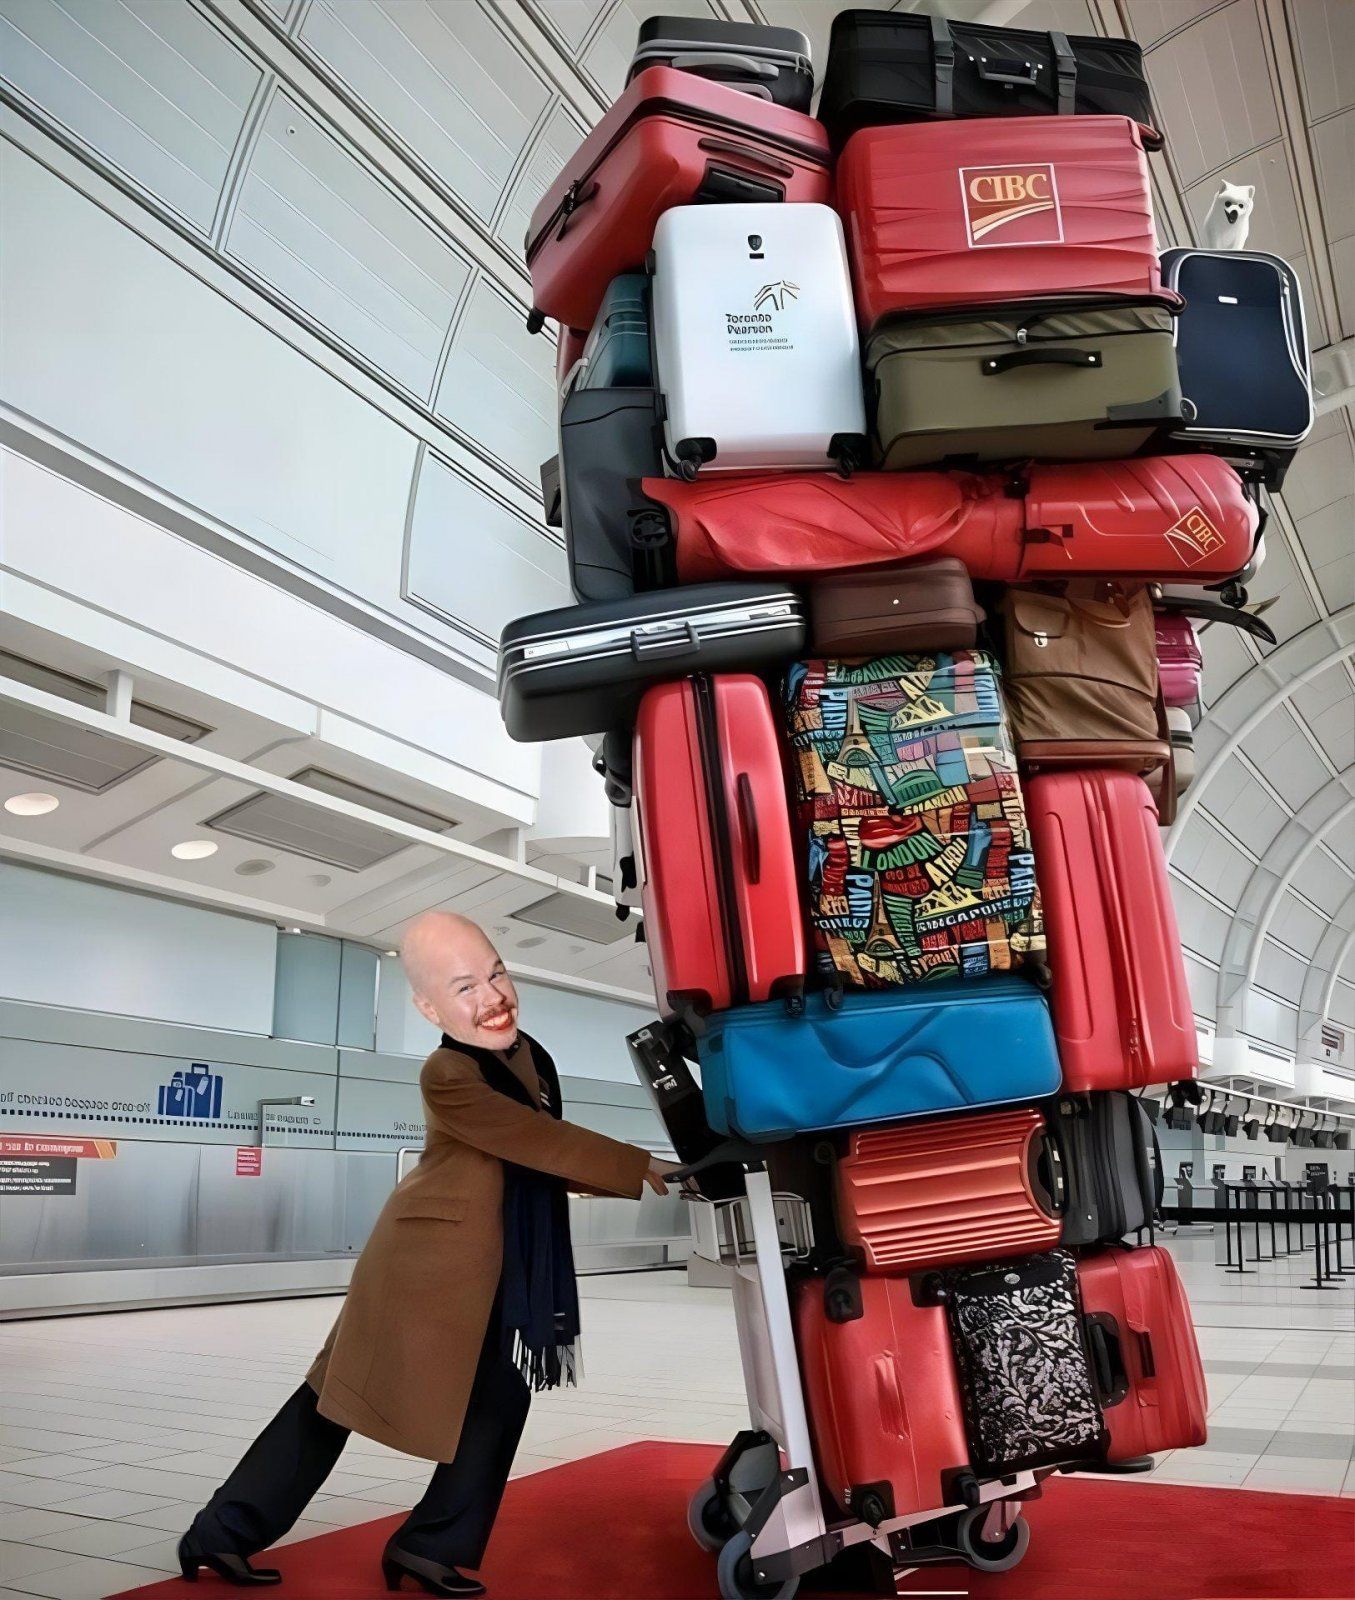 luggage theif.jpg